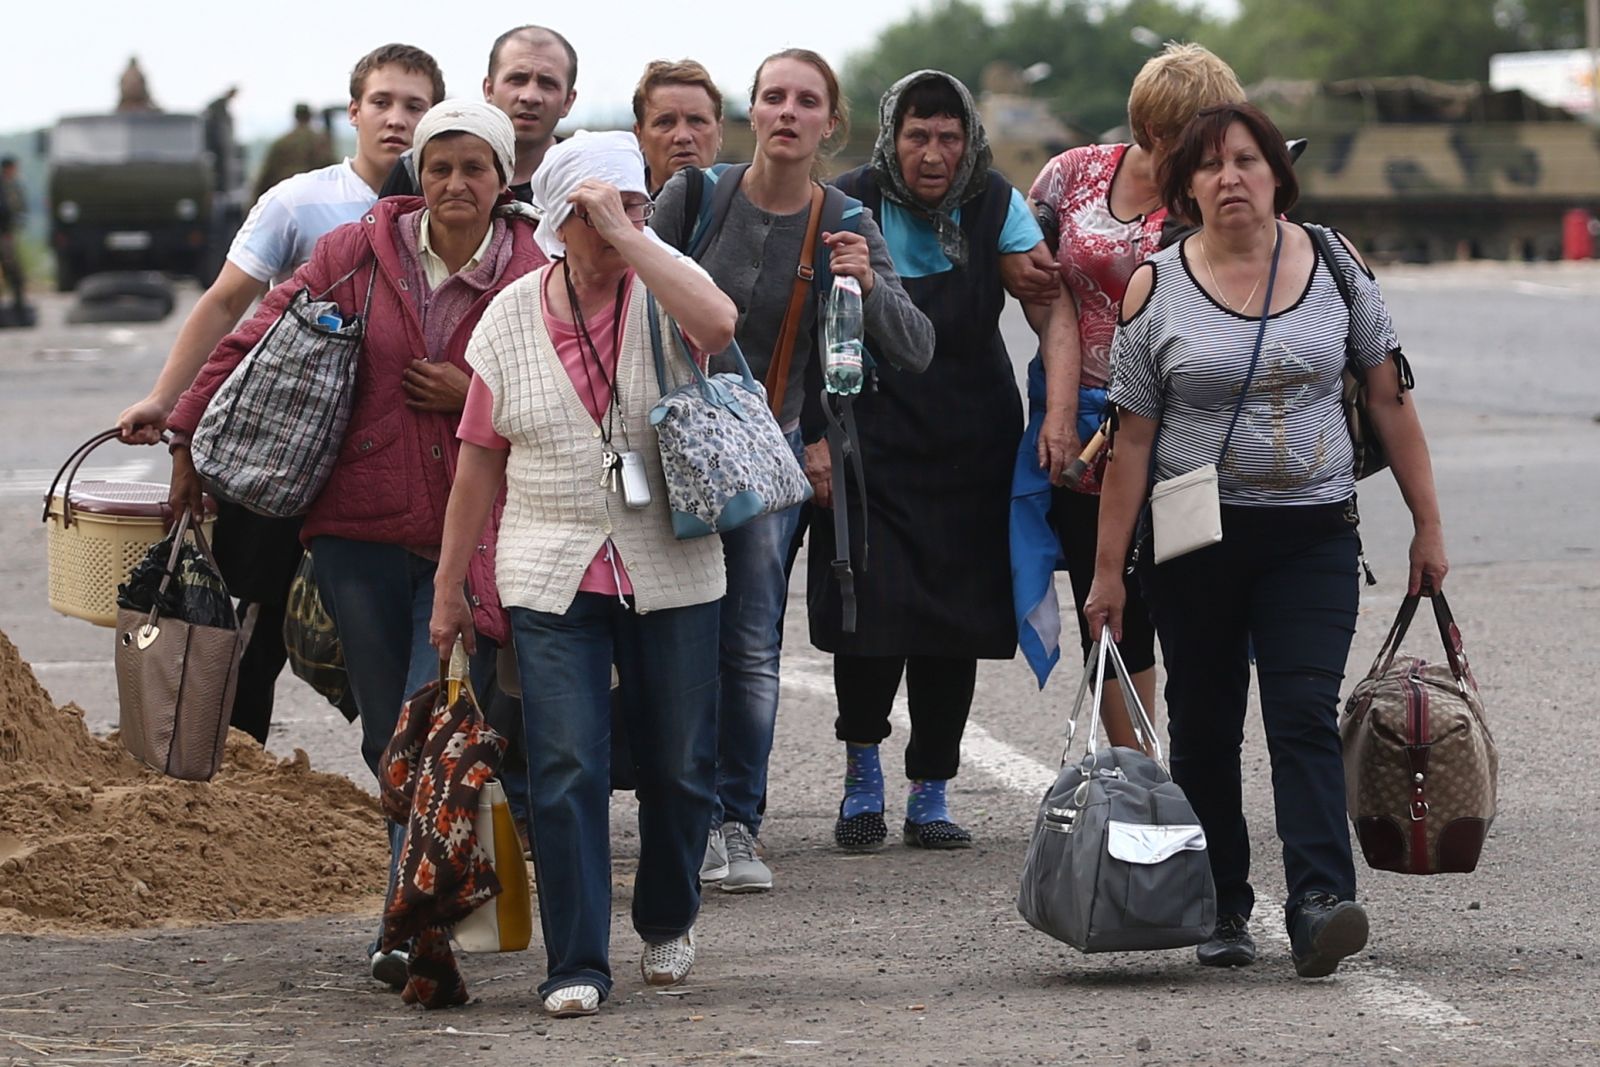 Убежища для беженцев из Донбасса в Мурманске закрывают по постановлению губернатора